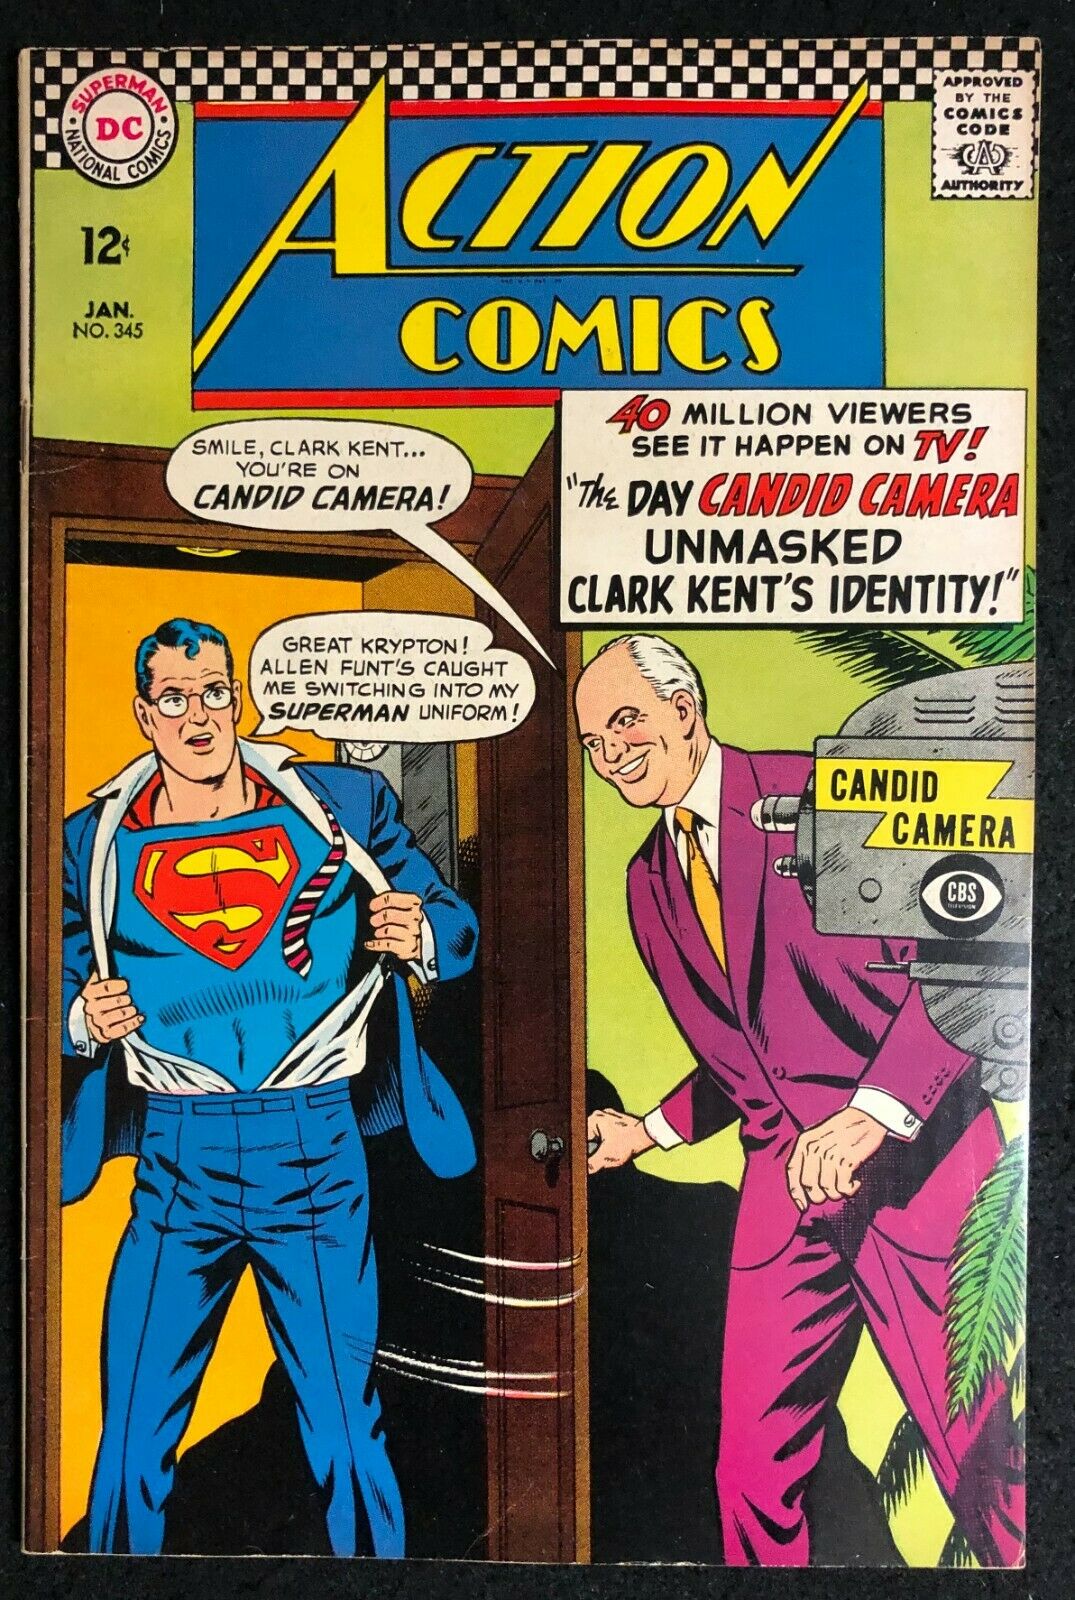 Action Comics #785 Jan 02 Binder